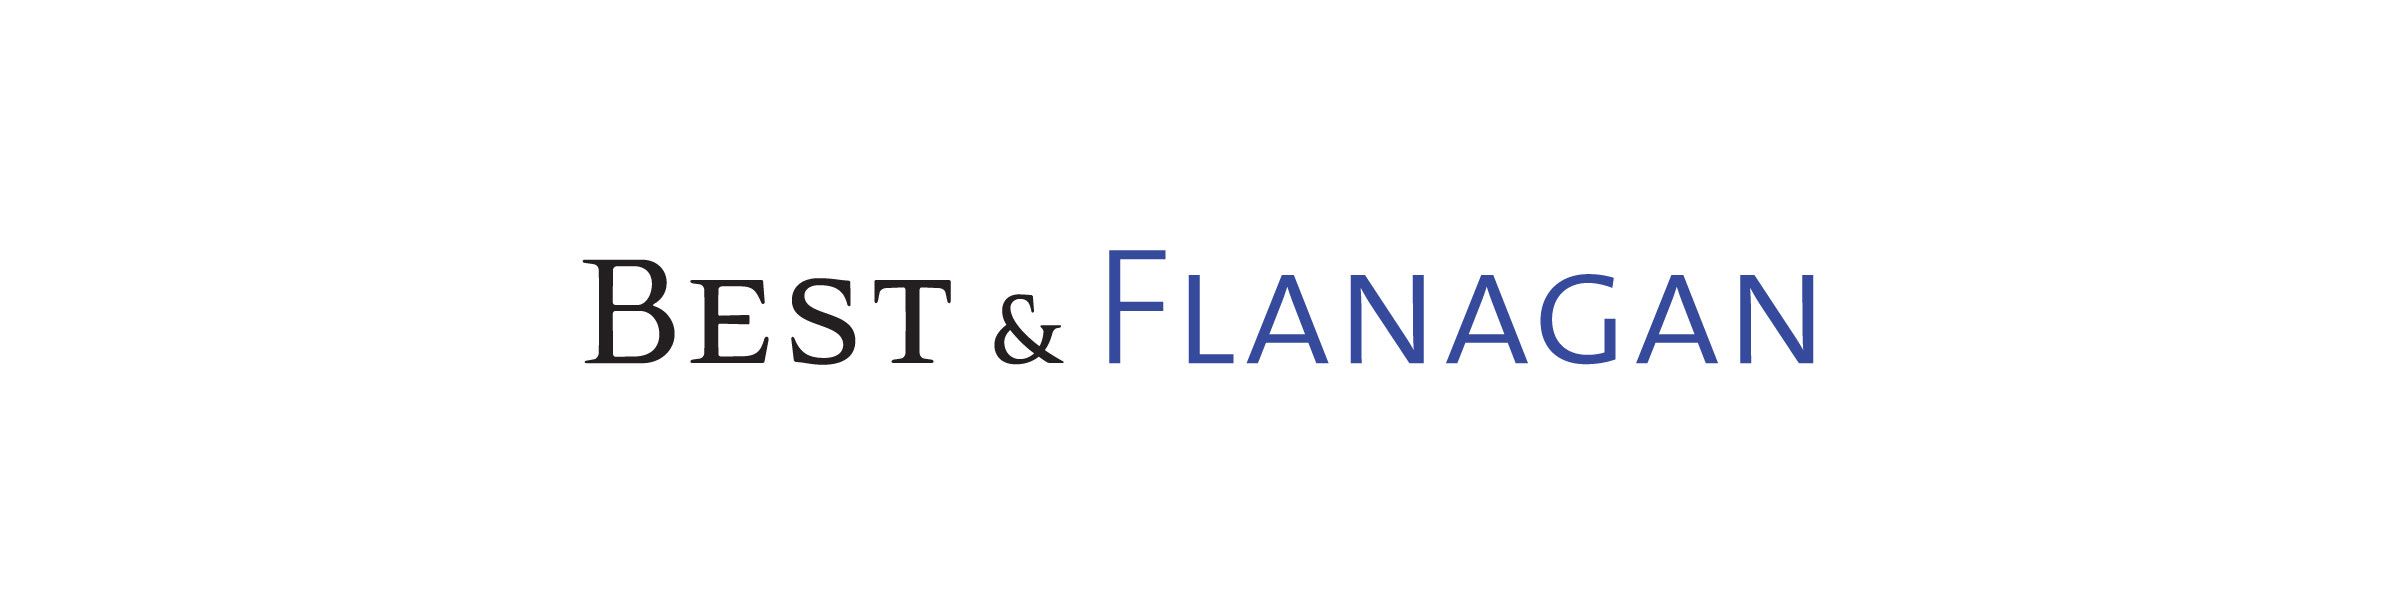 Best & Flanagan logo